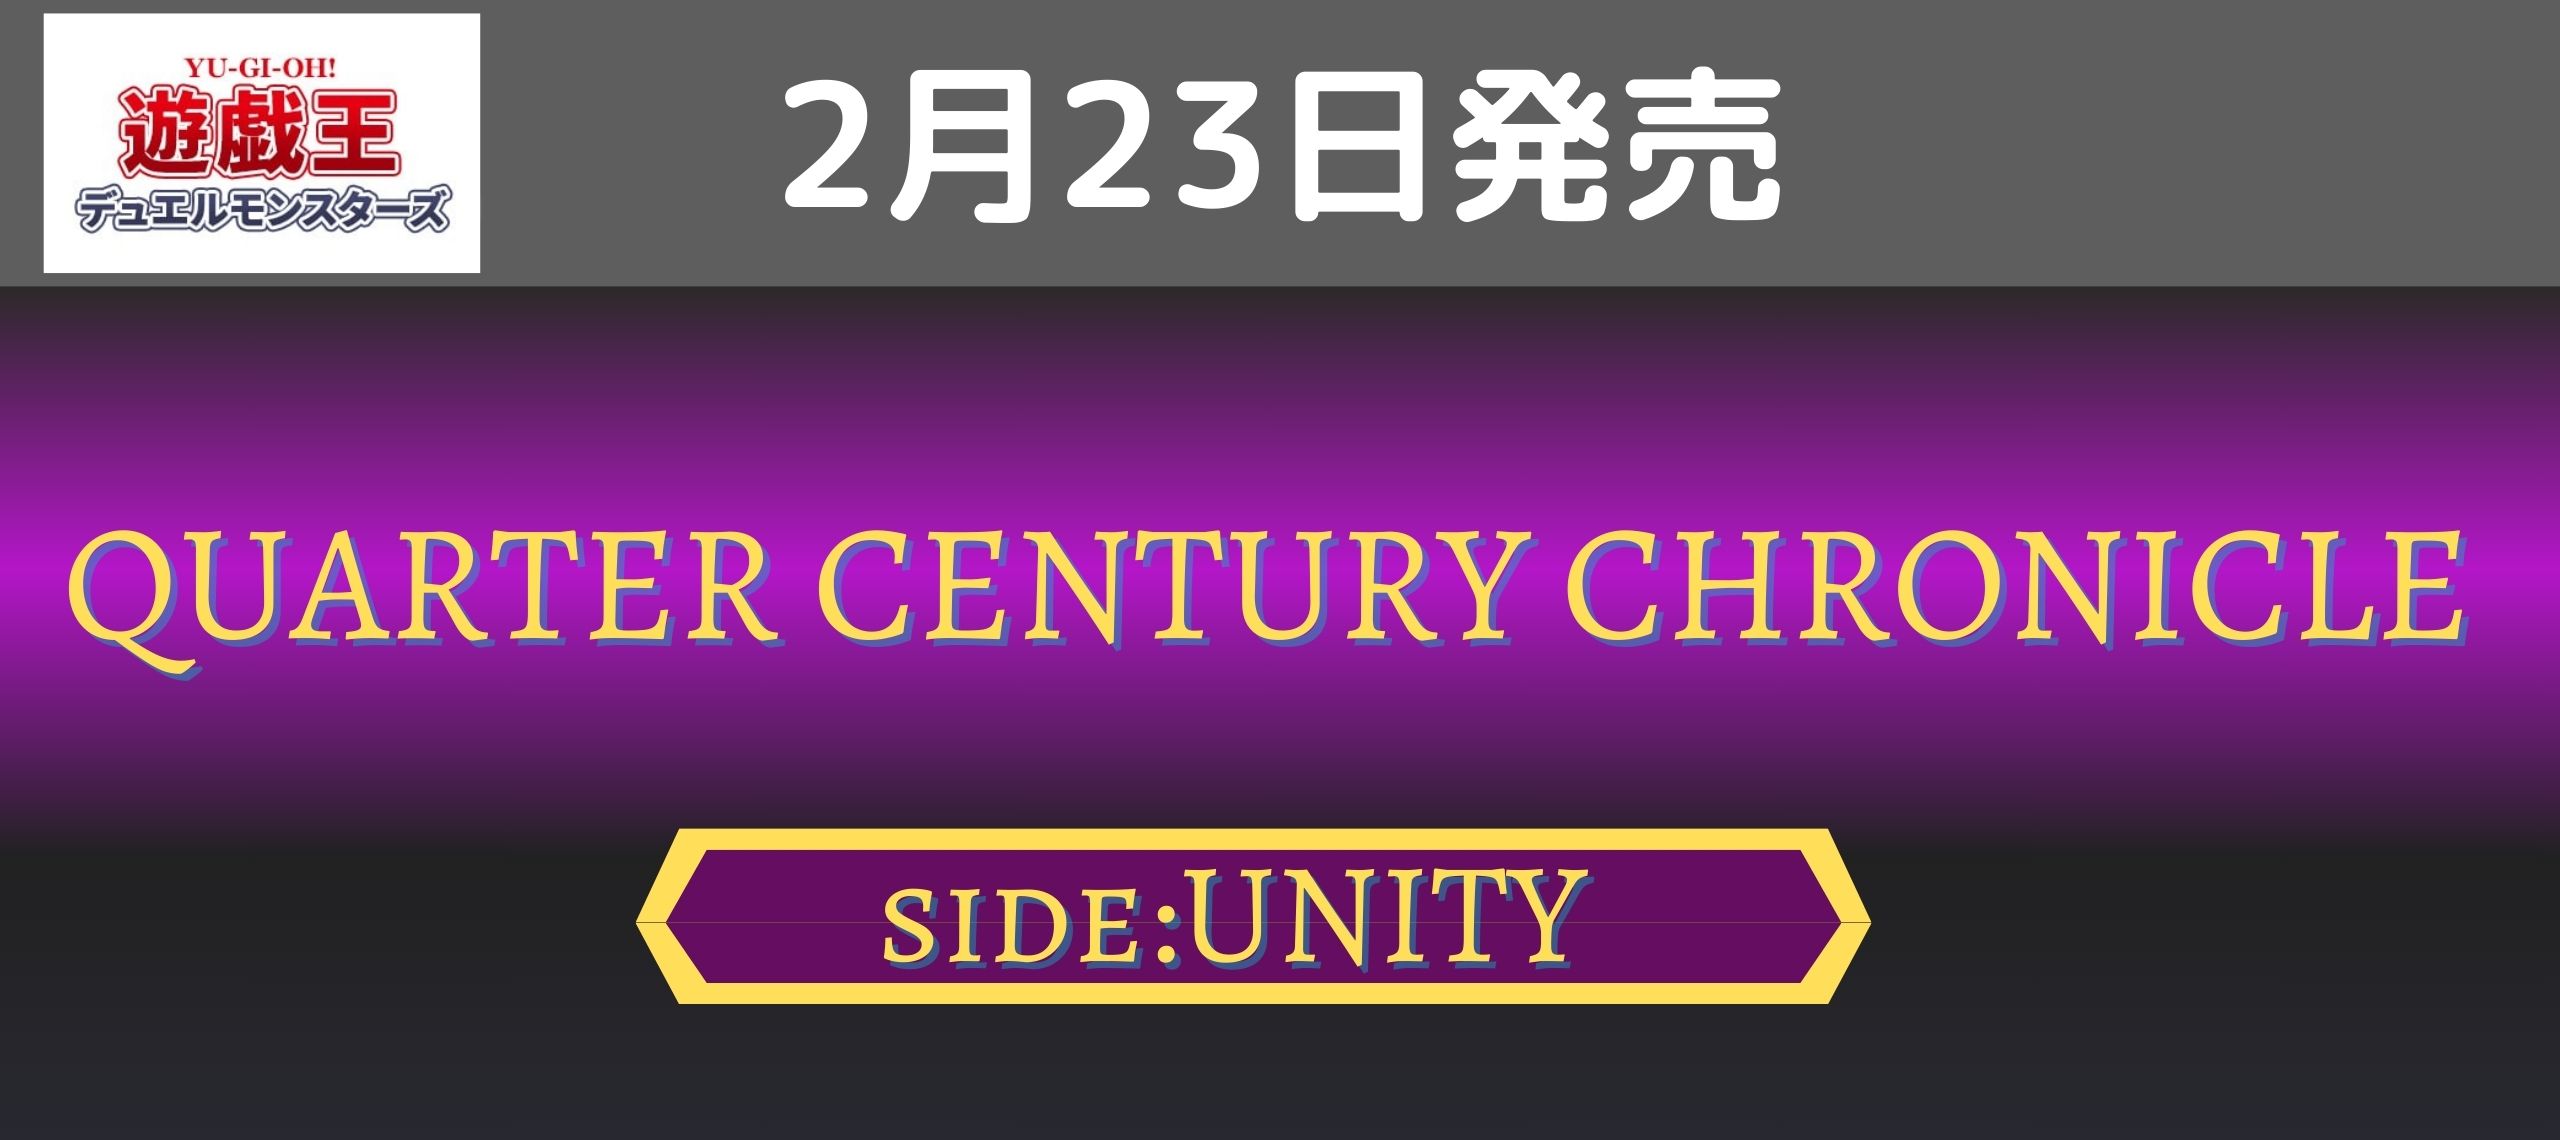 遊戯王 デュエルモンスターズ QCC side UNITY 2月23日(金)発売